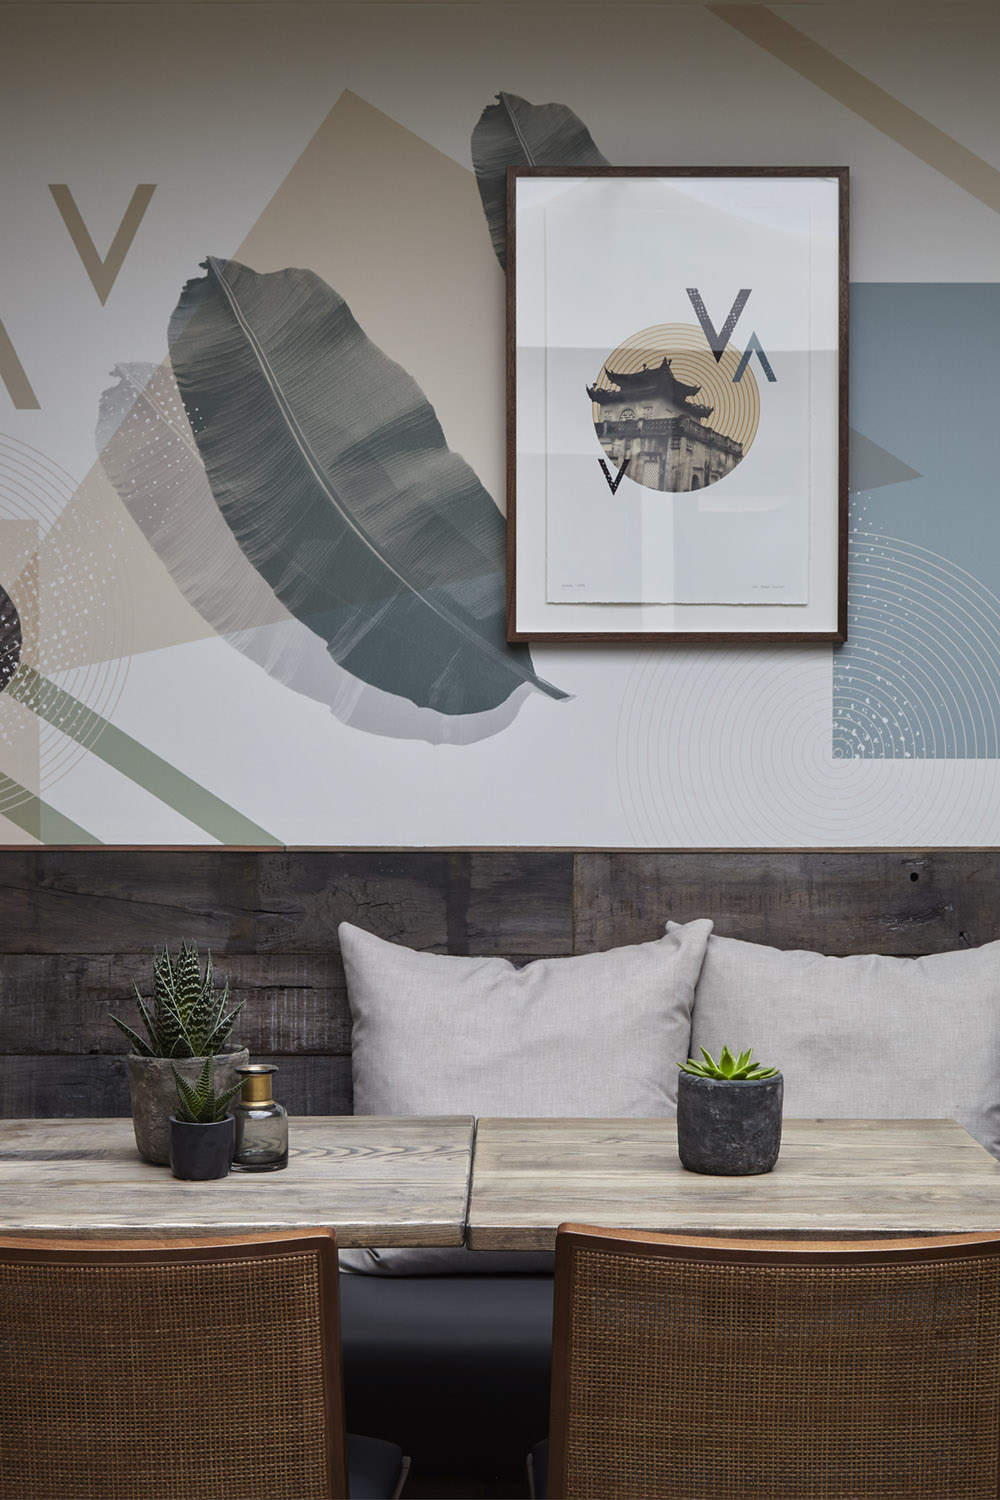 Mam_restaurant_bar_interior_design_branding_london_nottinghill_bespoke_wallpaper_framed_artwork_vietnam_seating